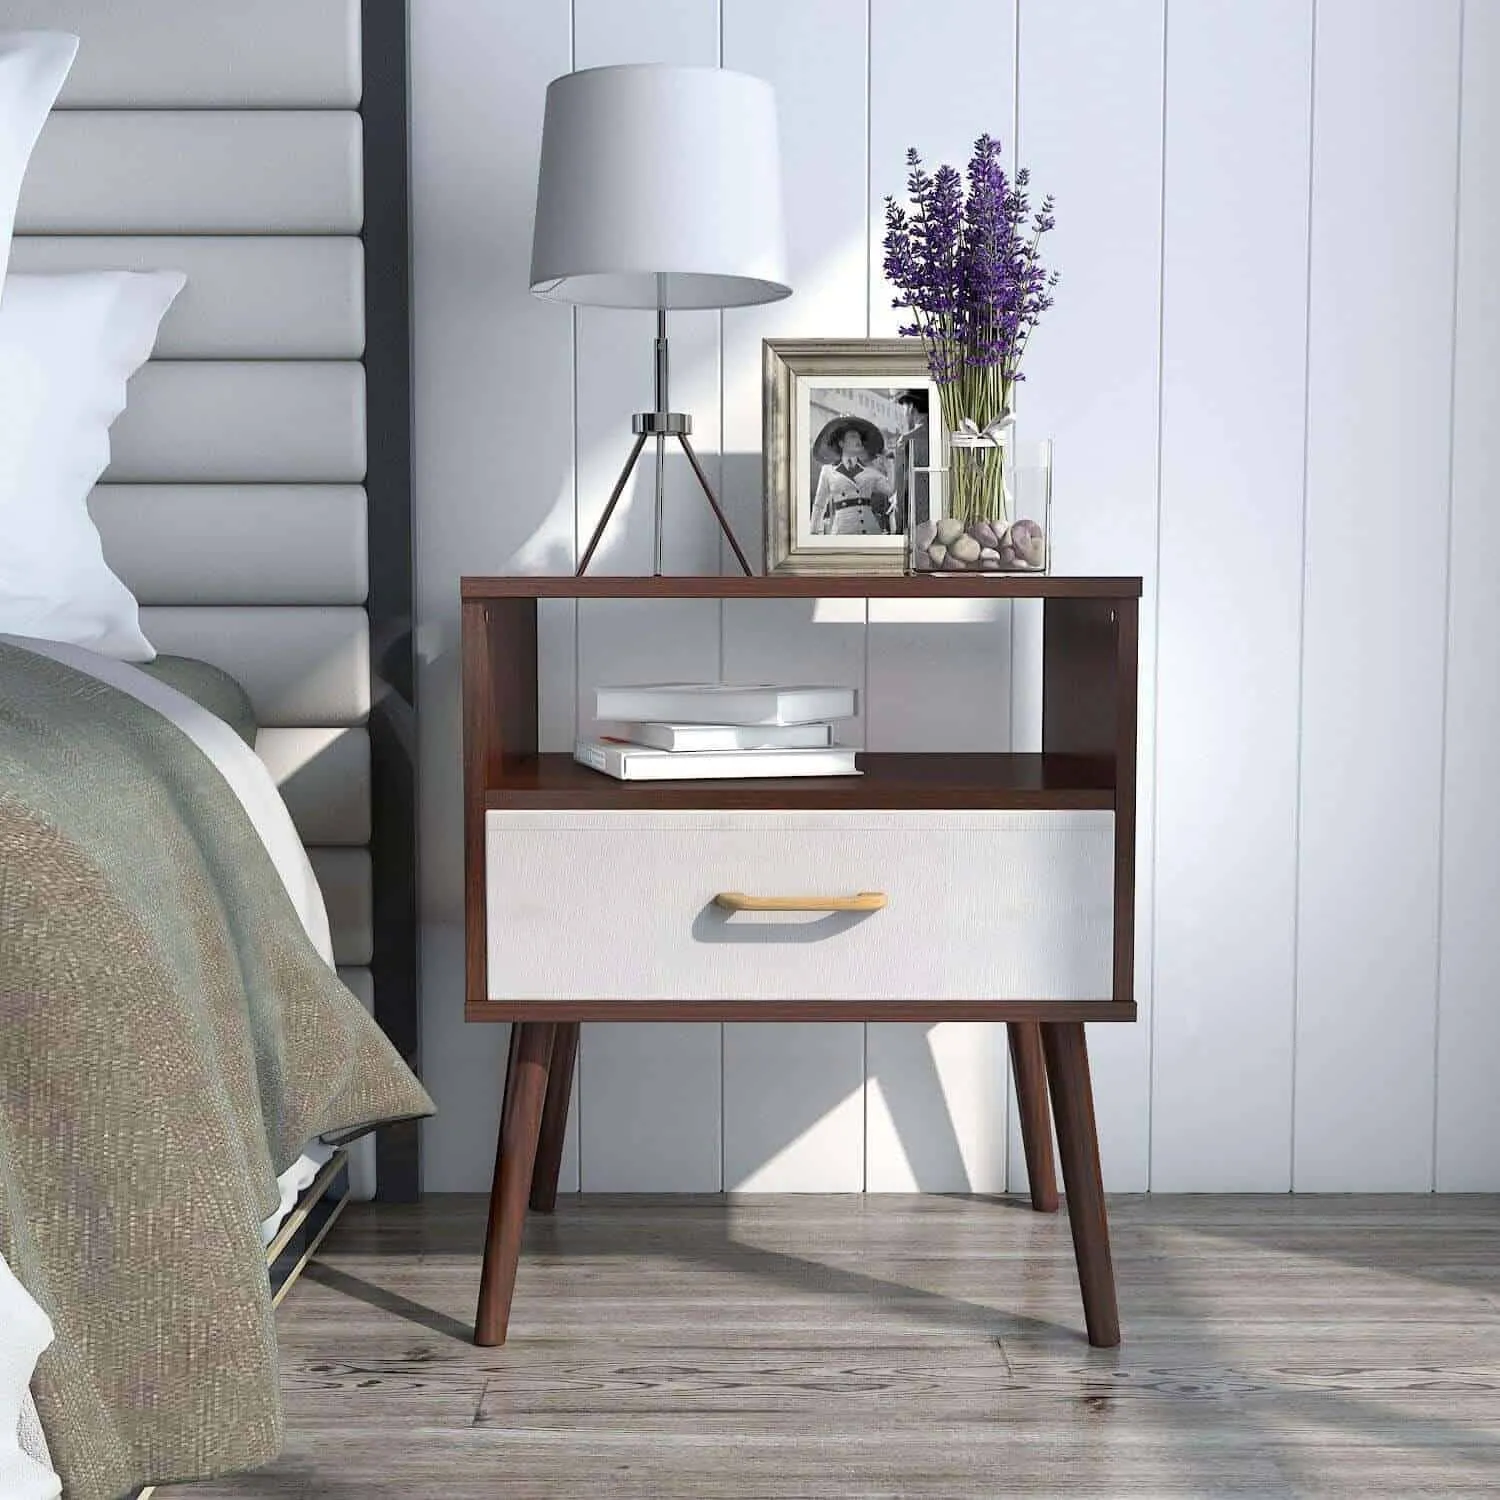 wooden bedside table design for bedroom decor